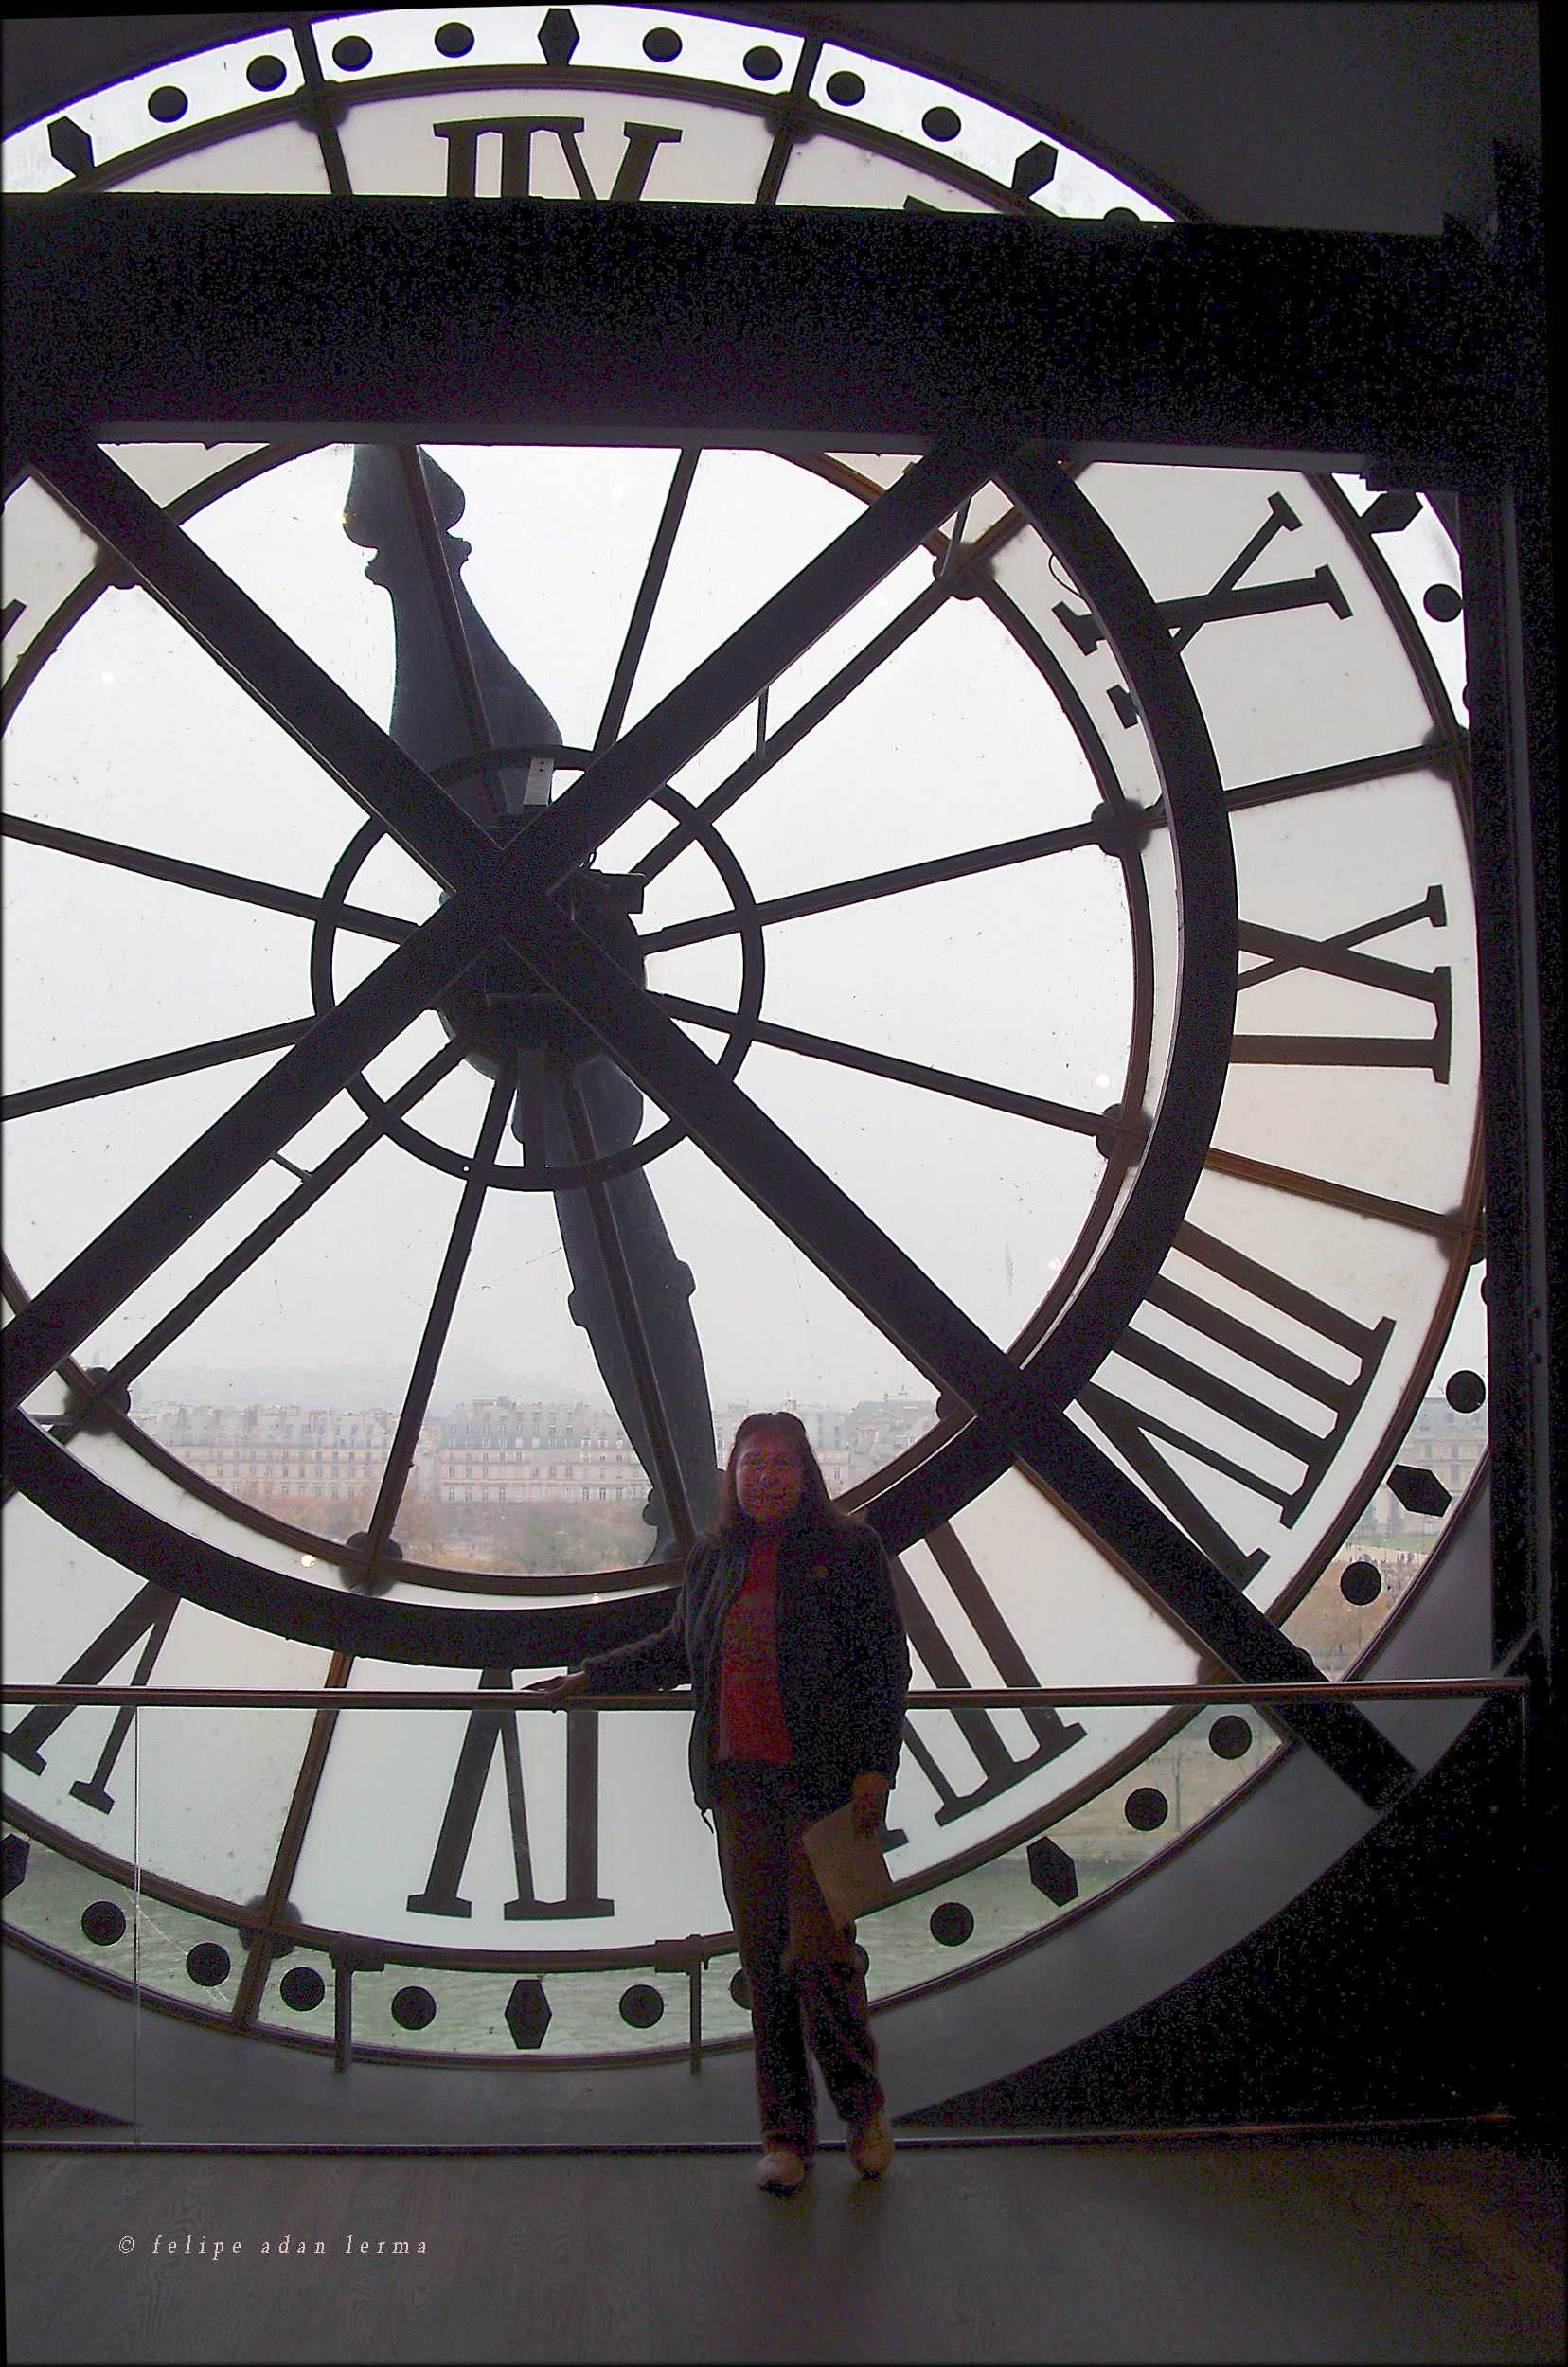 Sheila at the Big Clock "Horloge du Musée d'Orsay"